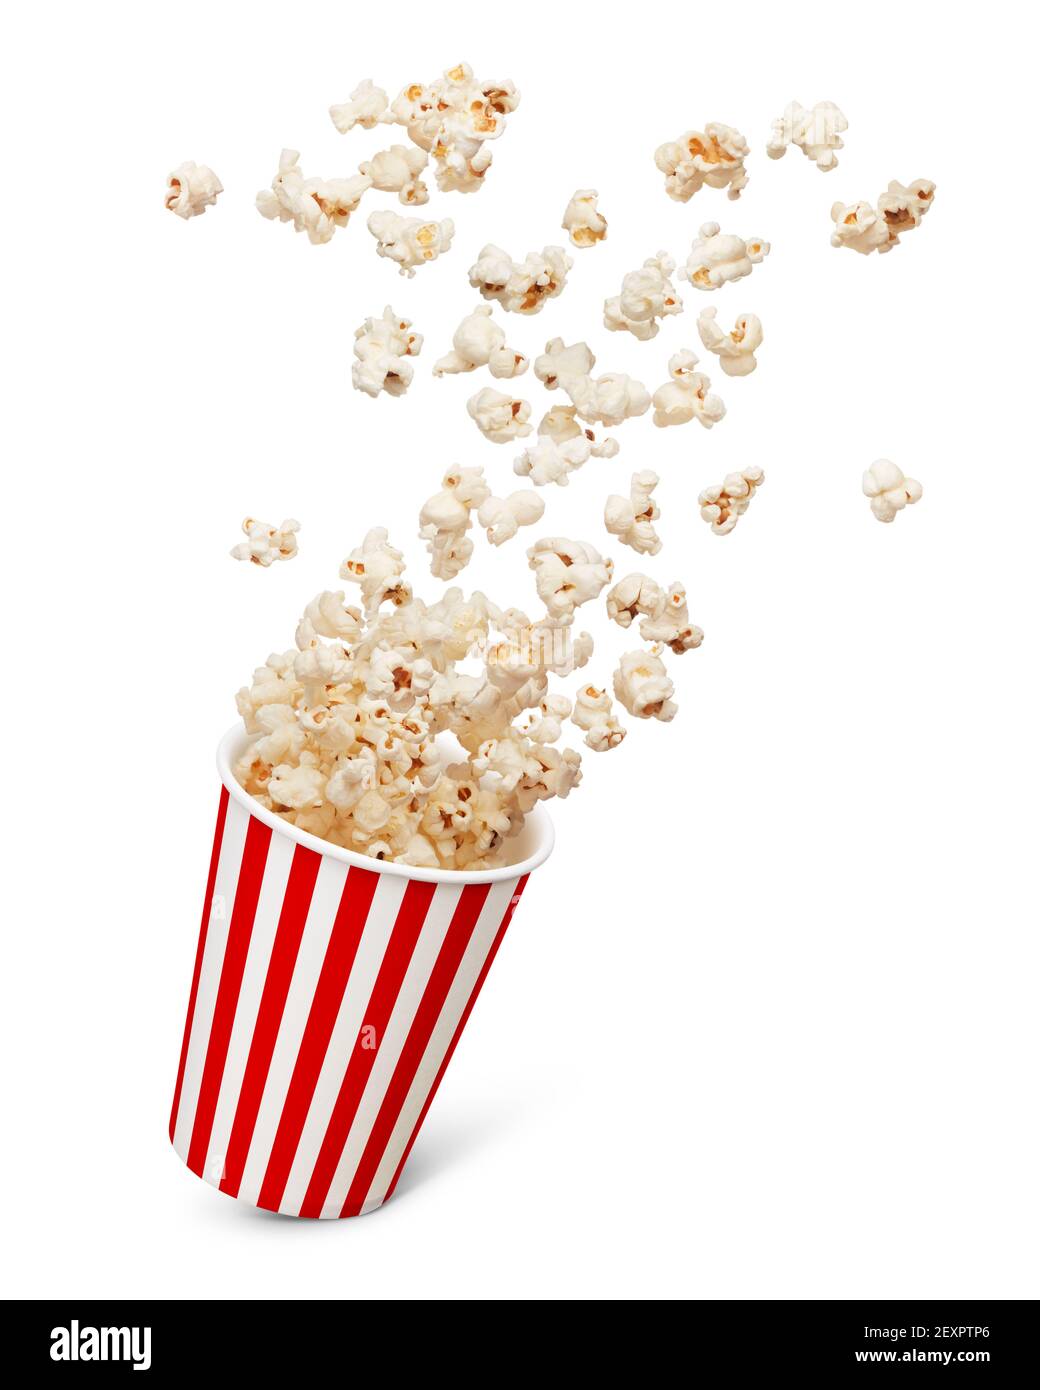 bucket of popcorn splashing isolated on white Stock Photo